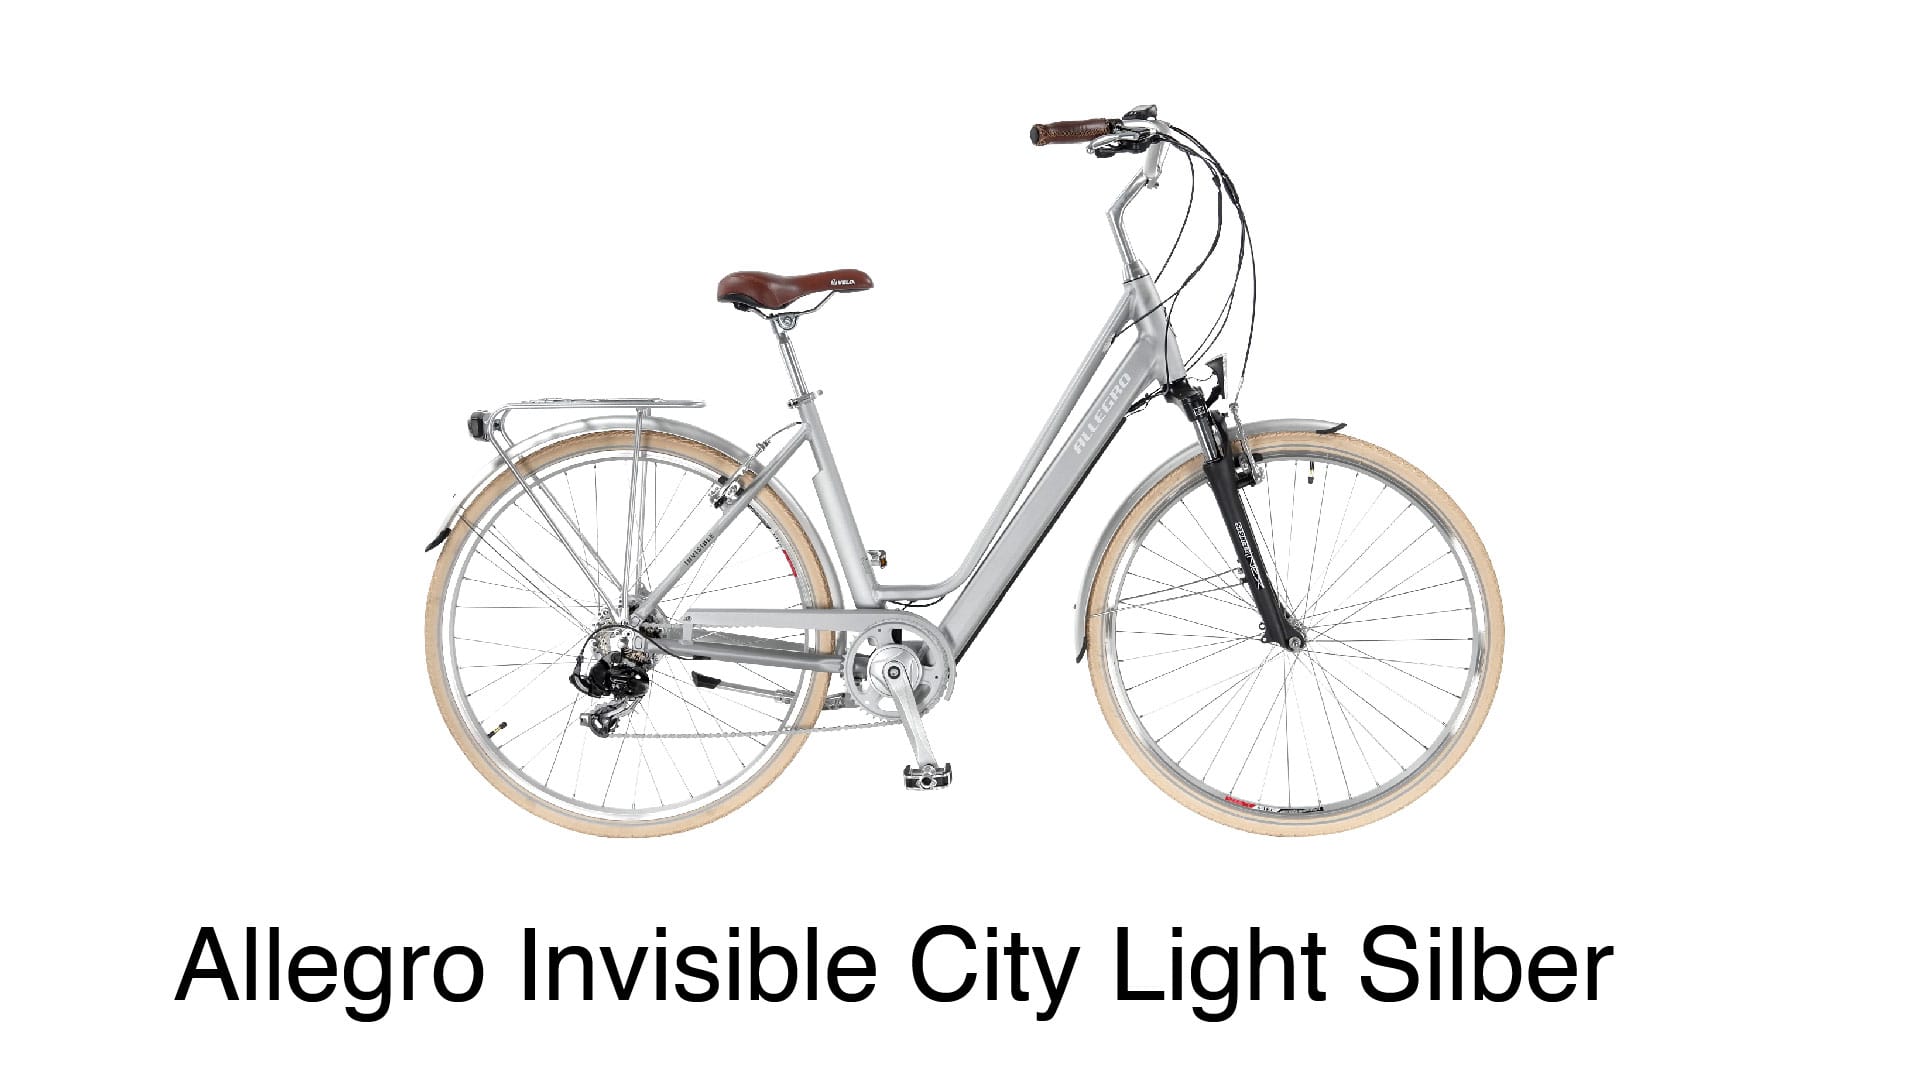 Komfortables City E-Bike der Extraklasse in Silber: Allegro Invisible City Light Silber.